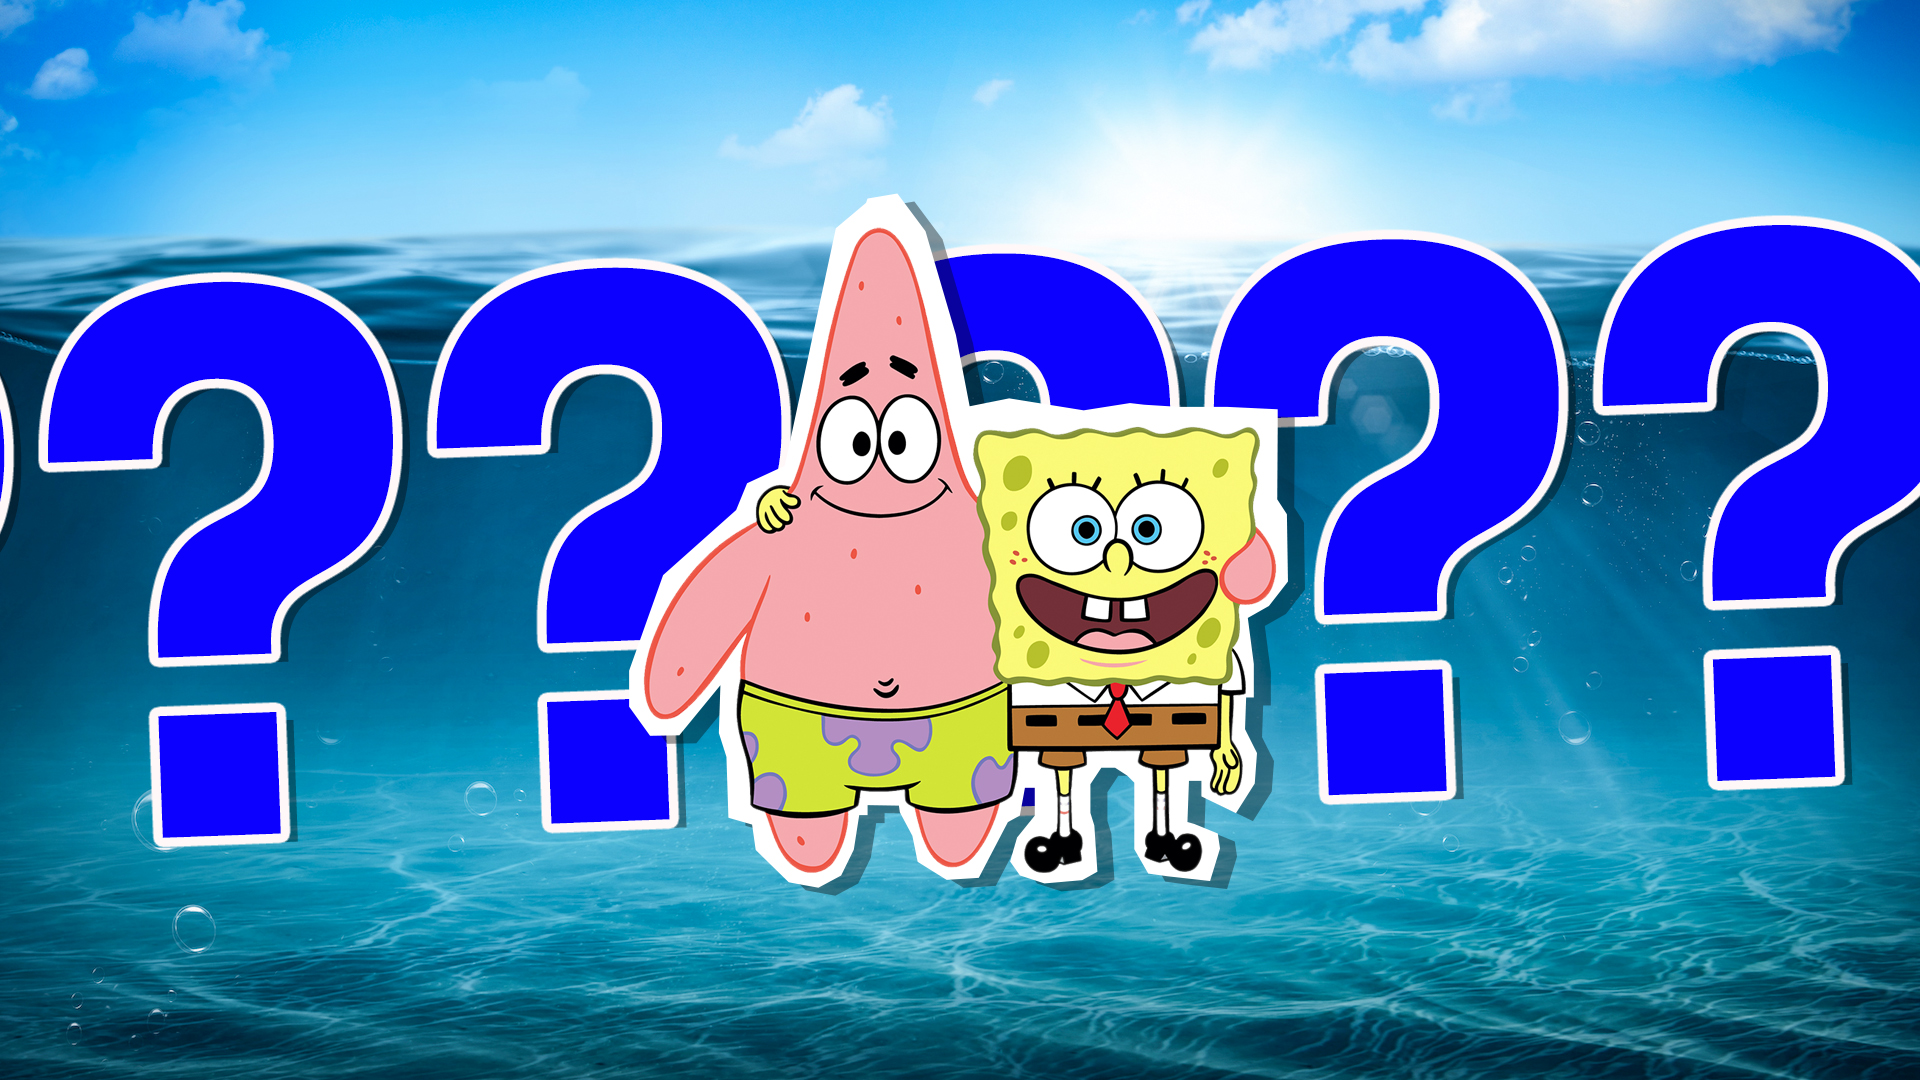 SpongeBob Squarepants and Patrick